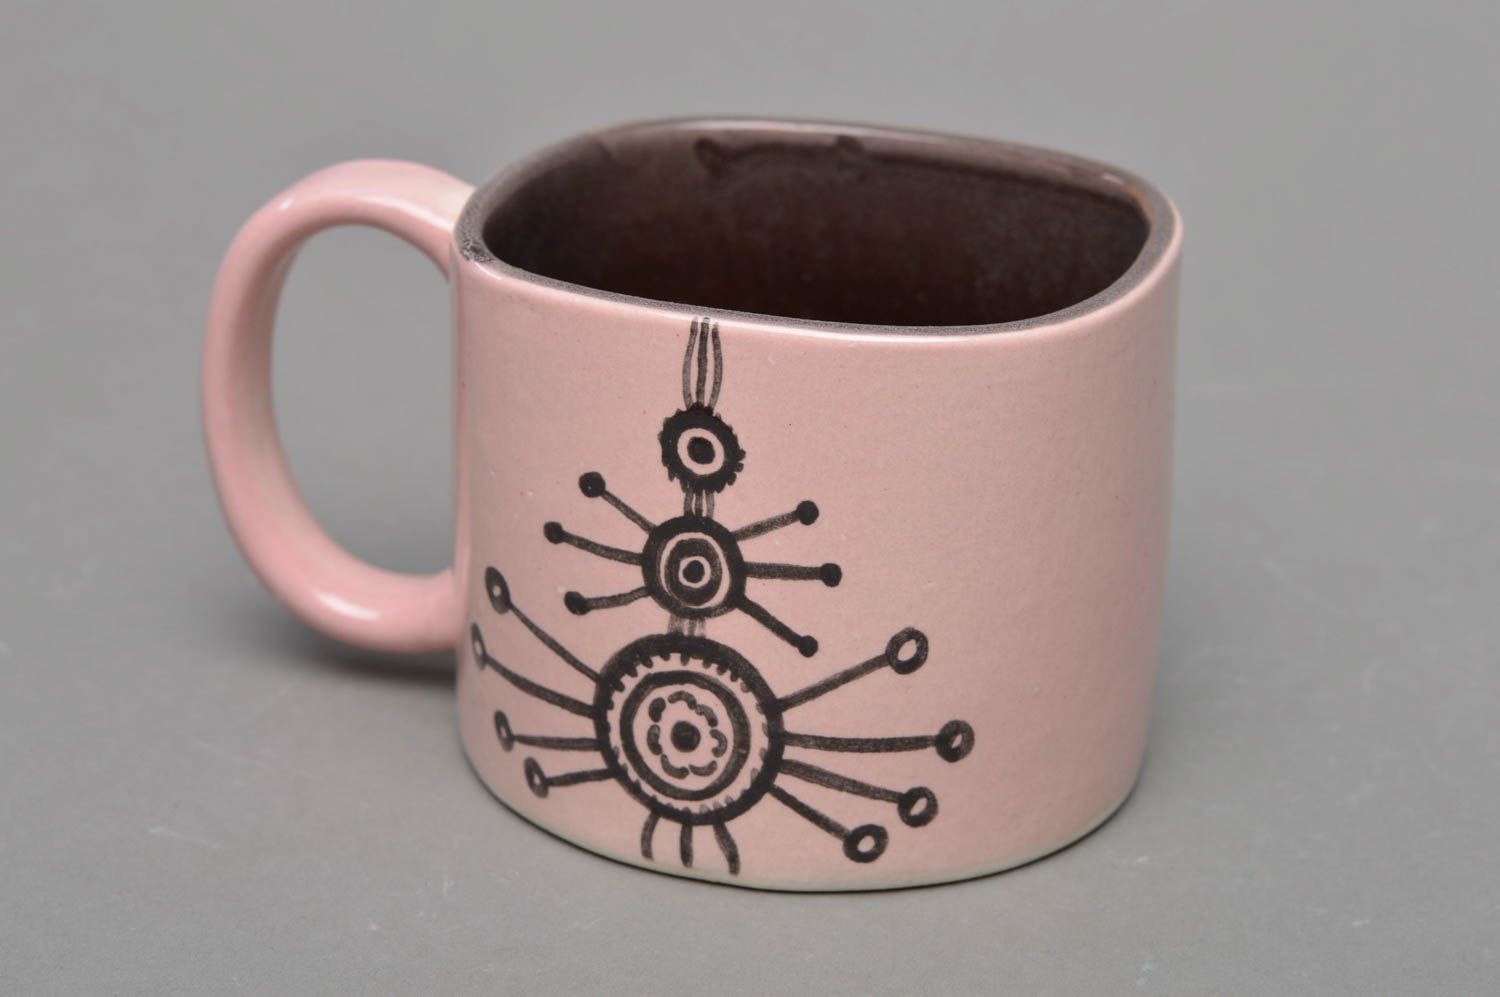 Фарфоровая чашка ручной работы с надписью Dum spiro spero розовая оригинальная фото 1